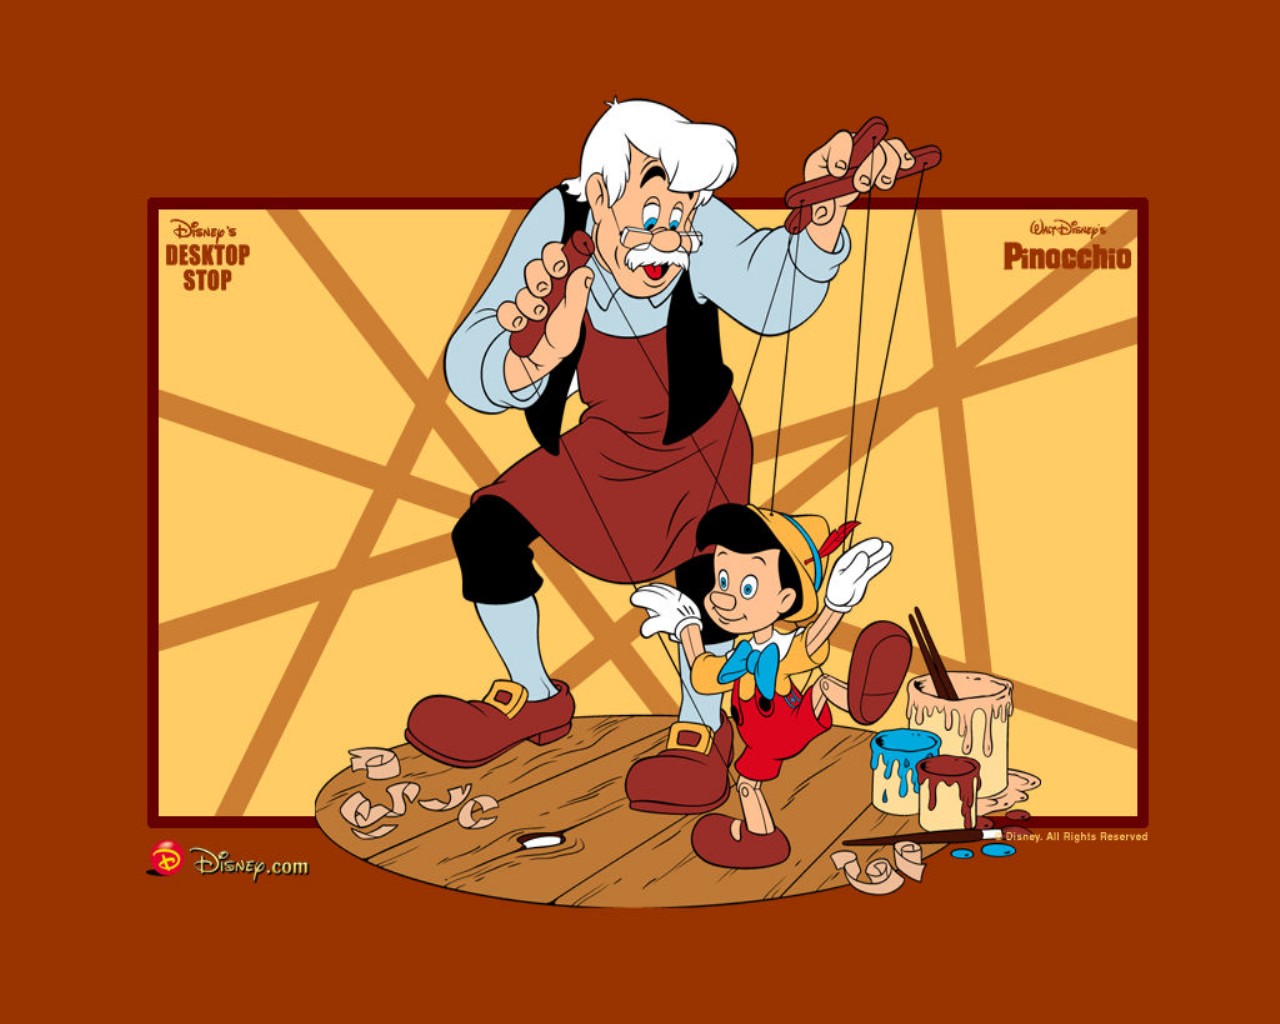 壁紙 ディズニー ピノキオ 漫画 ダウンロード 写真